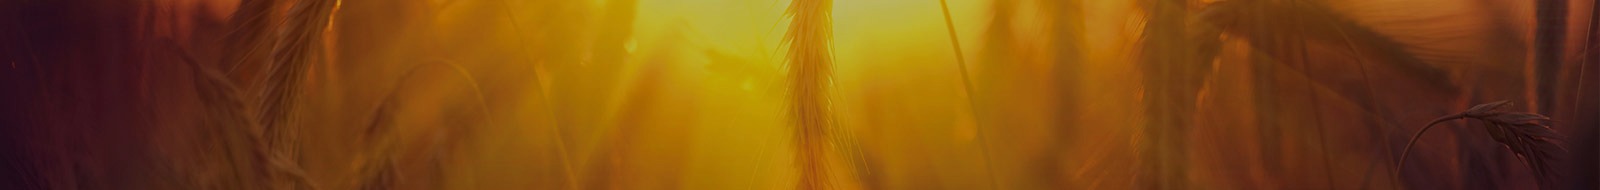 Bandeau représentant un champ de blé au soleil